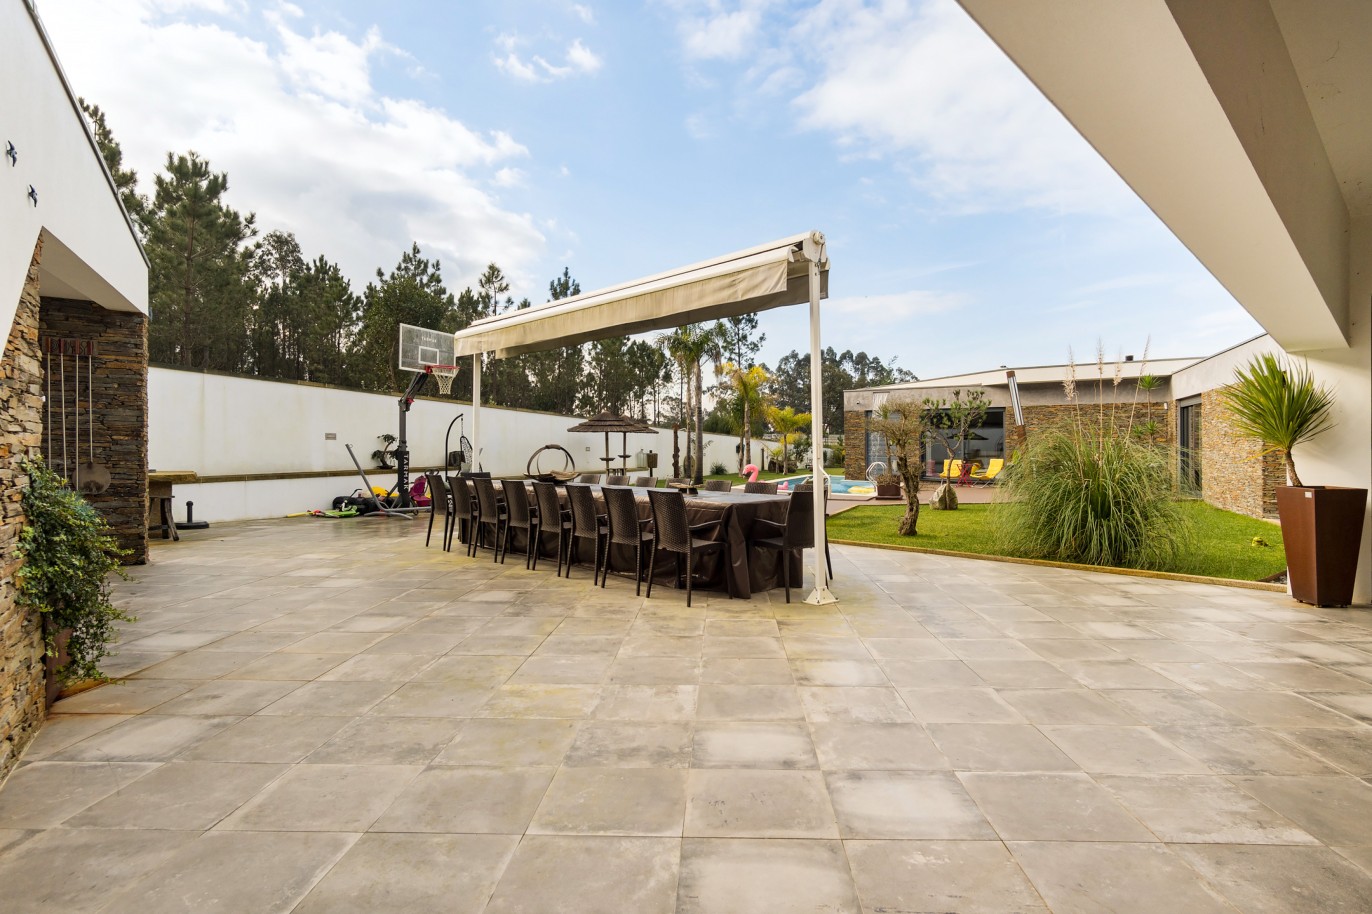 Vente : Villa individuelle de plain-pied avec piscine, terrain de jeux et jardin, à Ovar, Nord du Portugal_214923